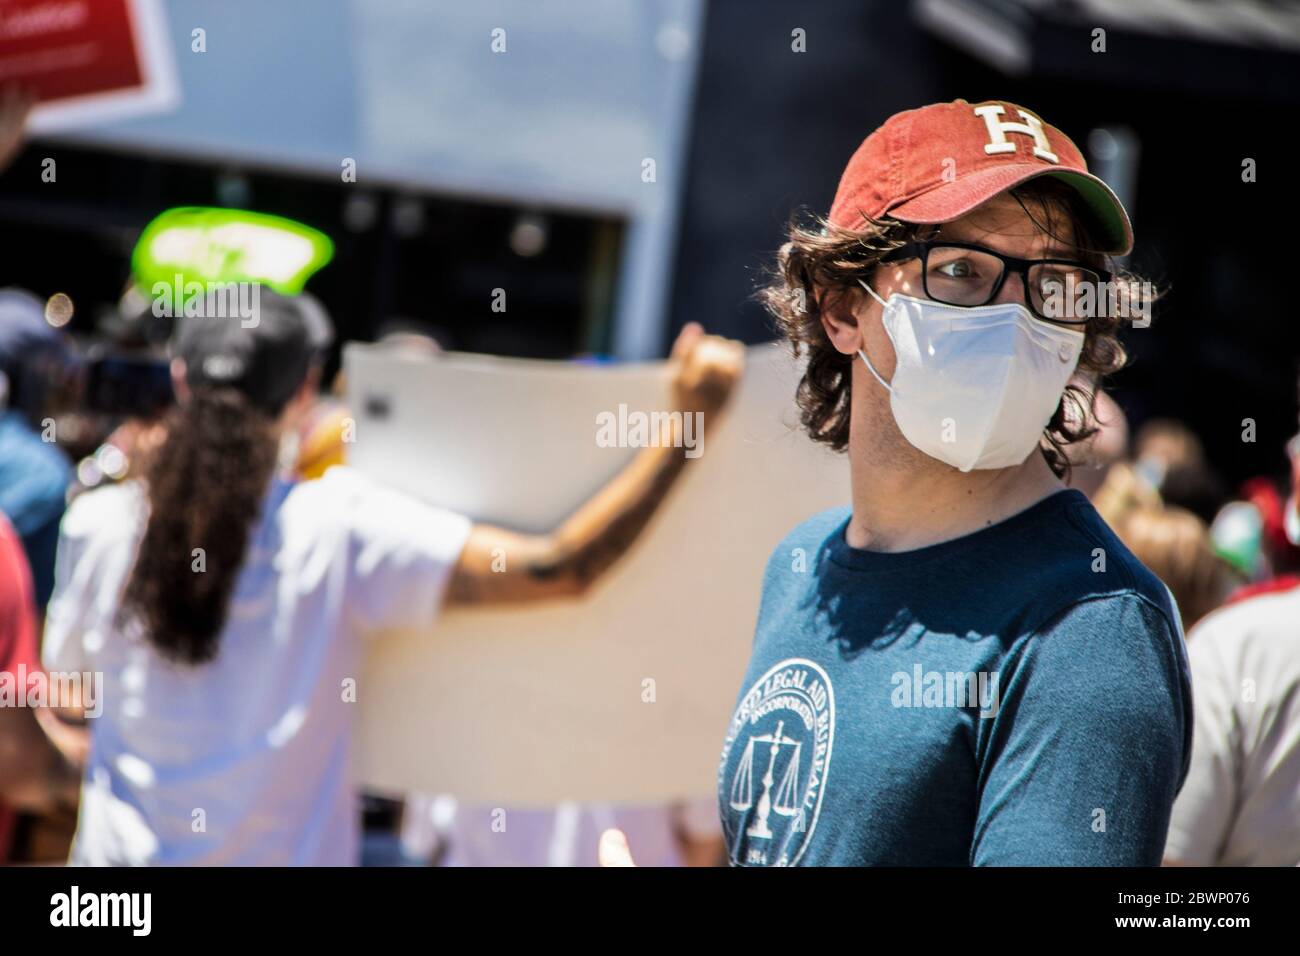 05-30-2020 Tulsa USA - Mann in Klassen und Mütze und Legal Aid Bureau T-Shirt blickt mit verschwommenen Demonstranten bei der BLM-Kundgebung hinter ihm nach hinten Stockfoto